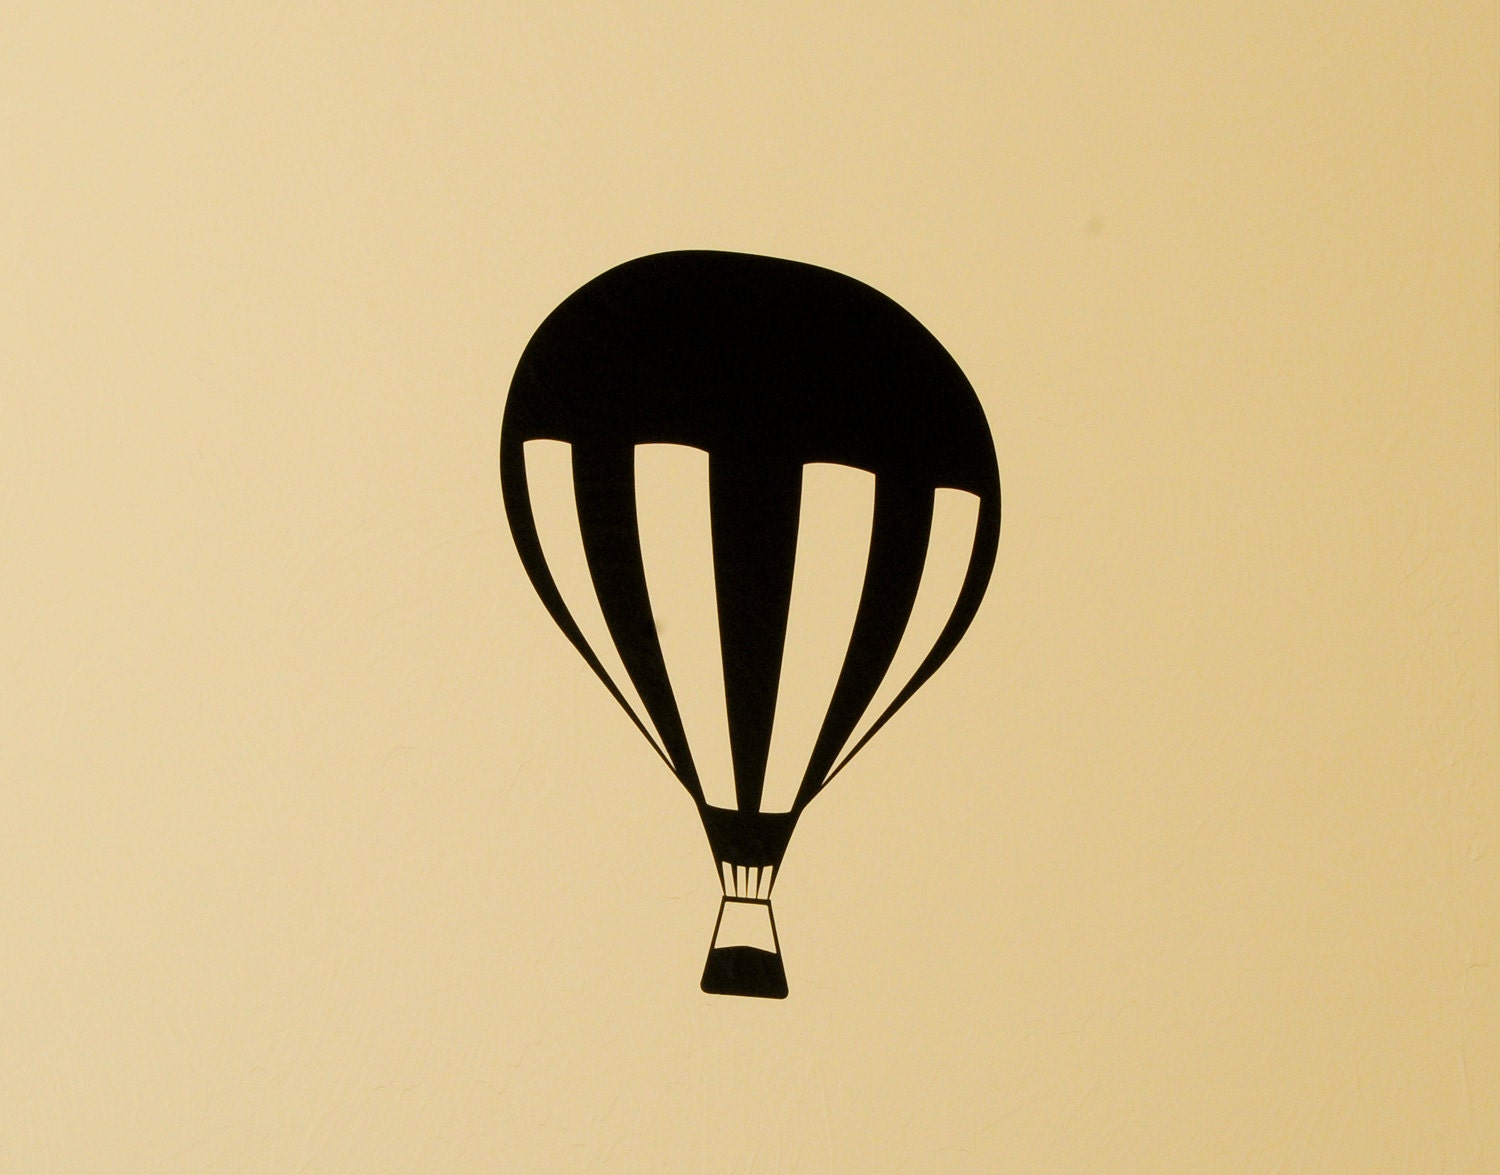 Hot Air Balloon Wall Decal | Etsy